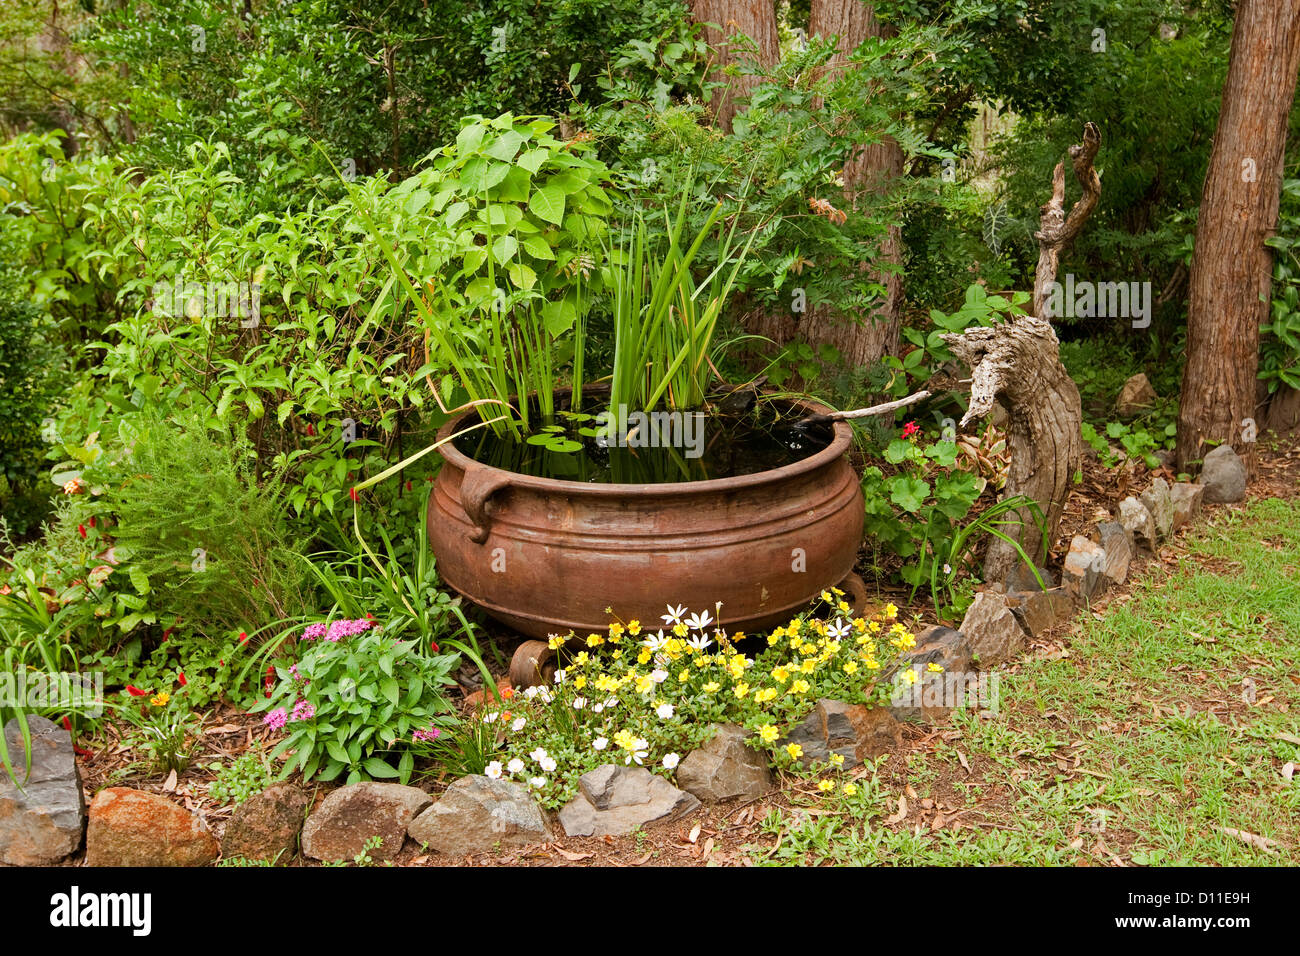 Ornato del laghetto in giardino - grande calderone arrugginito come una funzione di acqua con piante acquatiche e circondato da colorati di piante fiorite Foto Stock